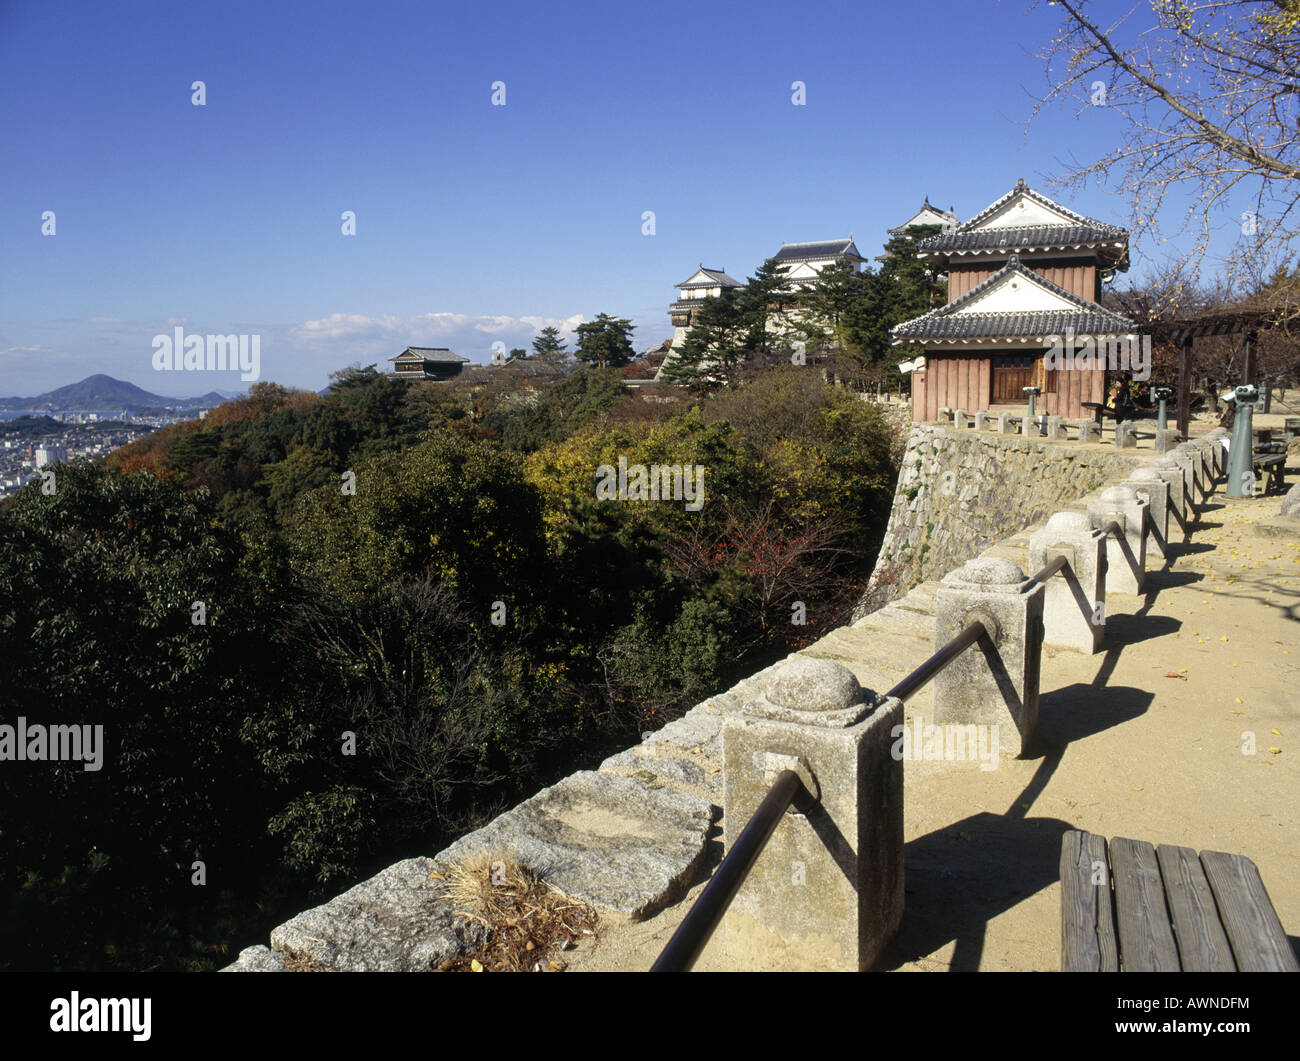 Matsuyama Schloss. Verzierte Dächer. Wände aus Stein. Geländer. Grüne Bäume. Hügel in der Ferne. Stockfoto